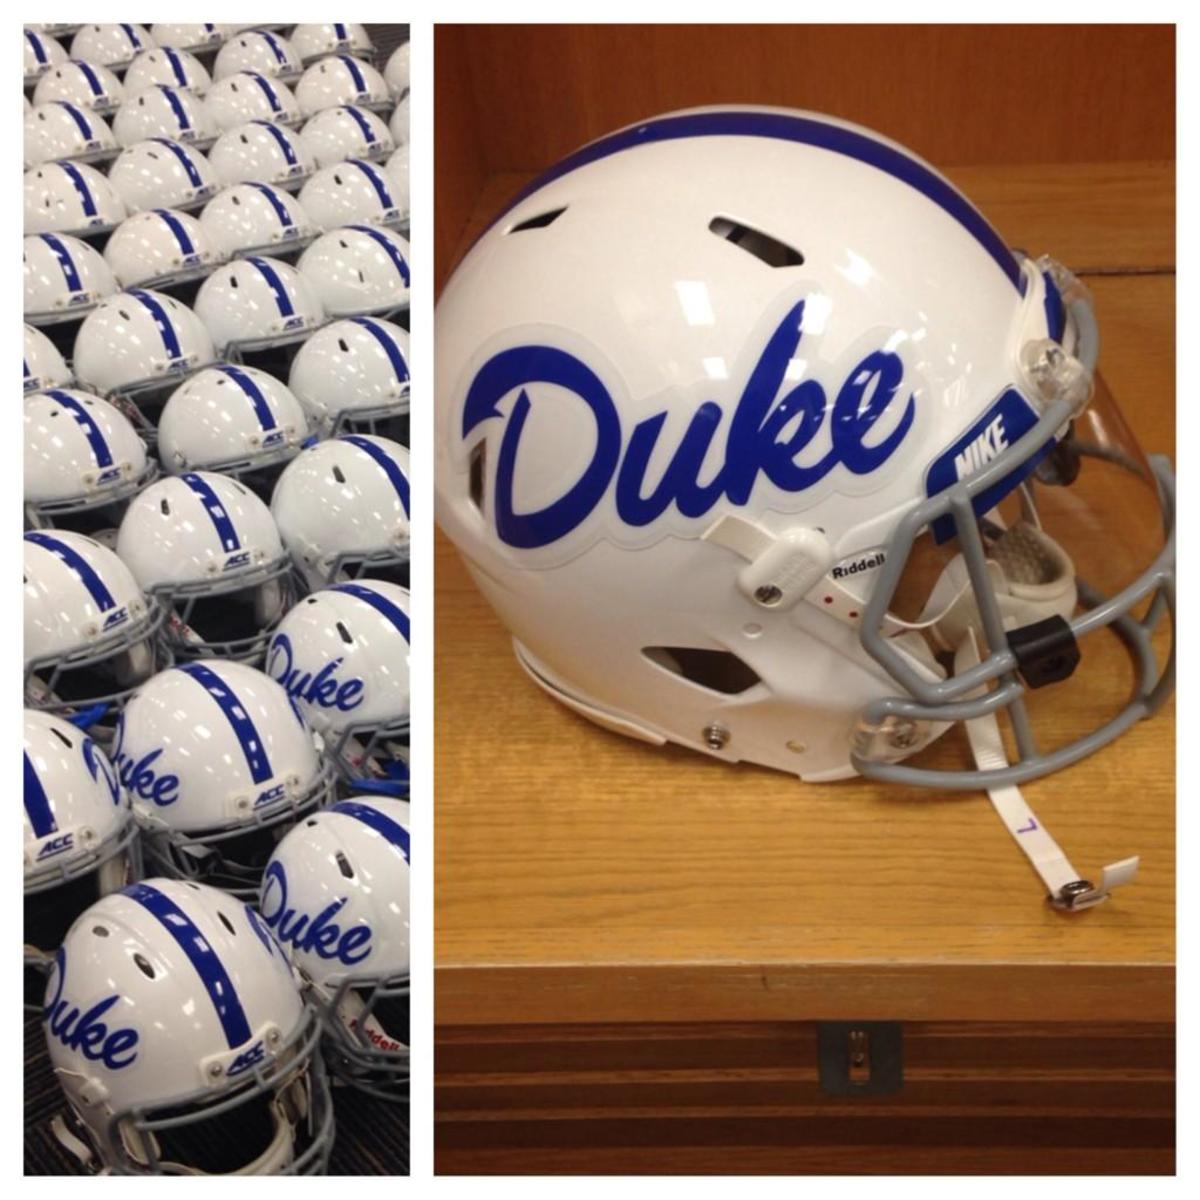 Duke throwback helmets